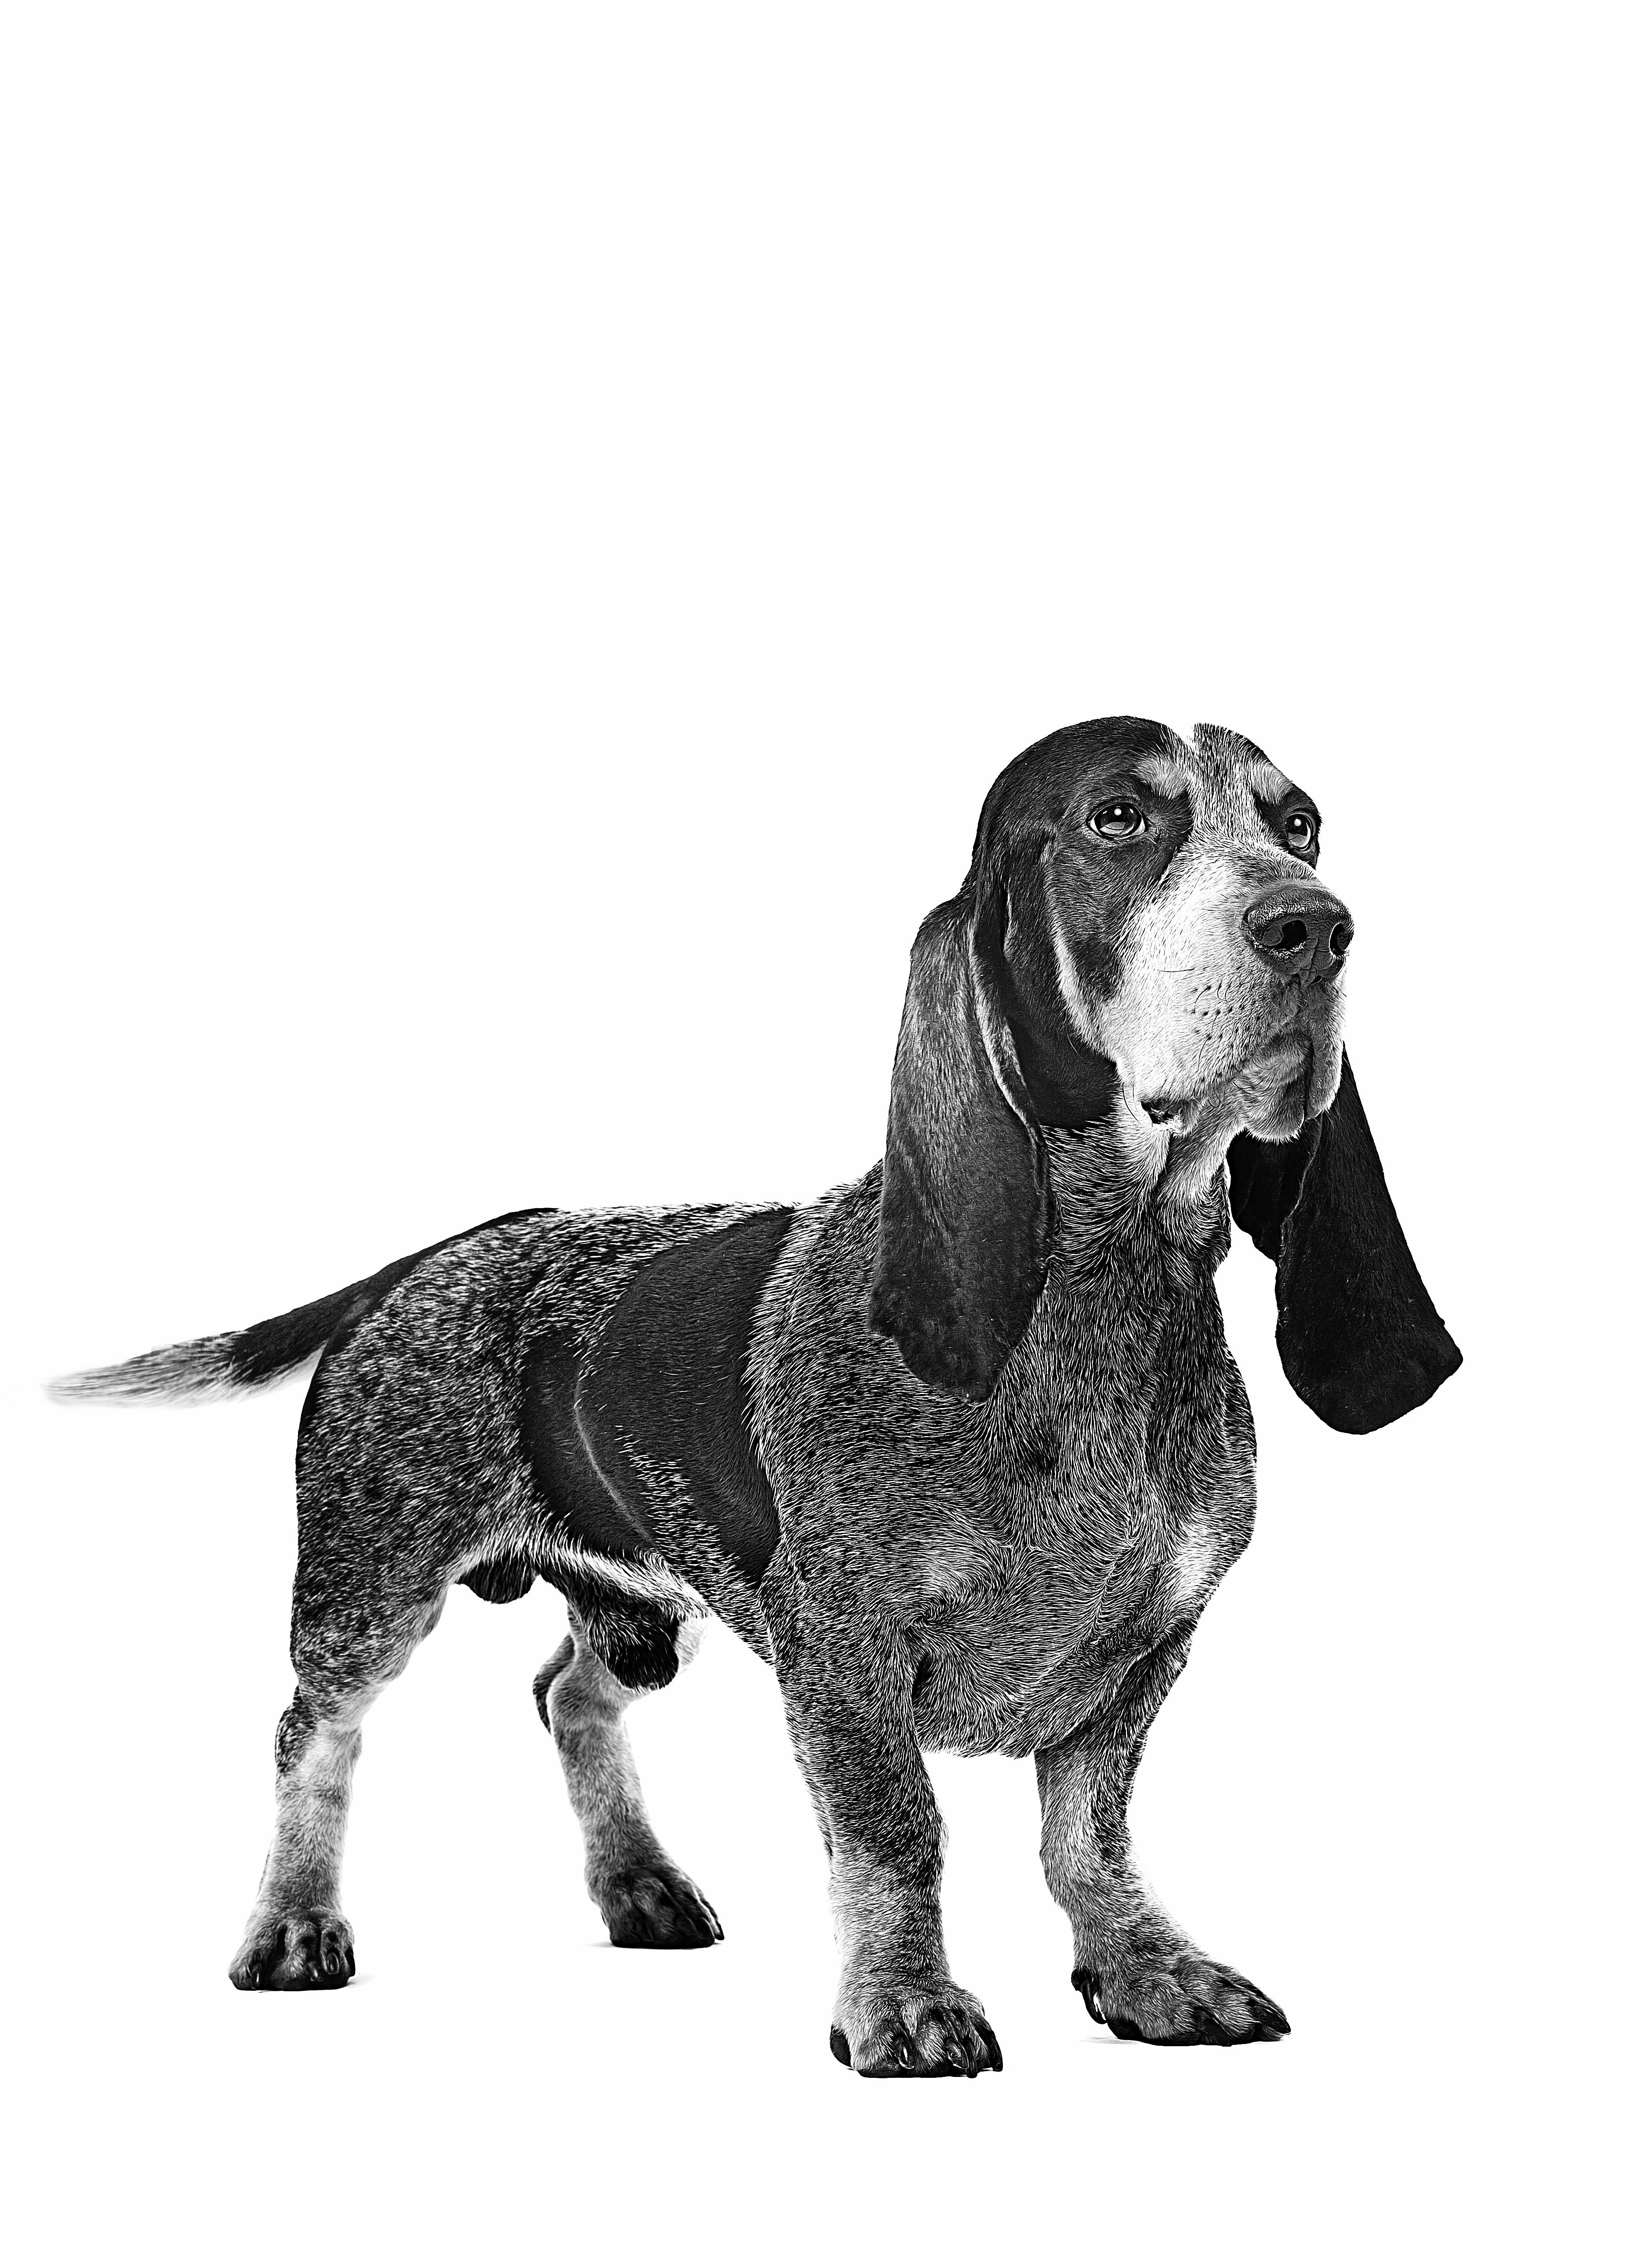 Basset Bleu de Gascogne adult in black and white